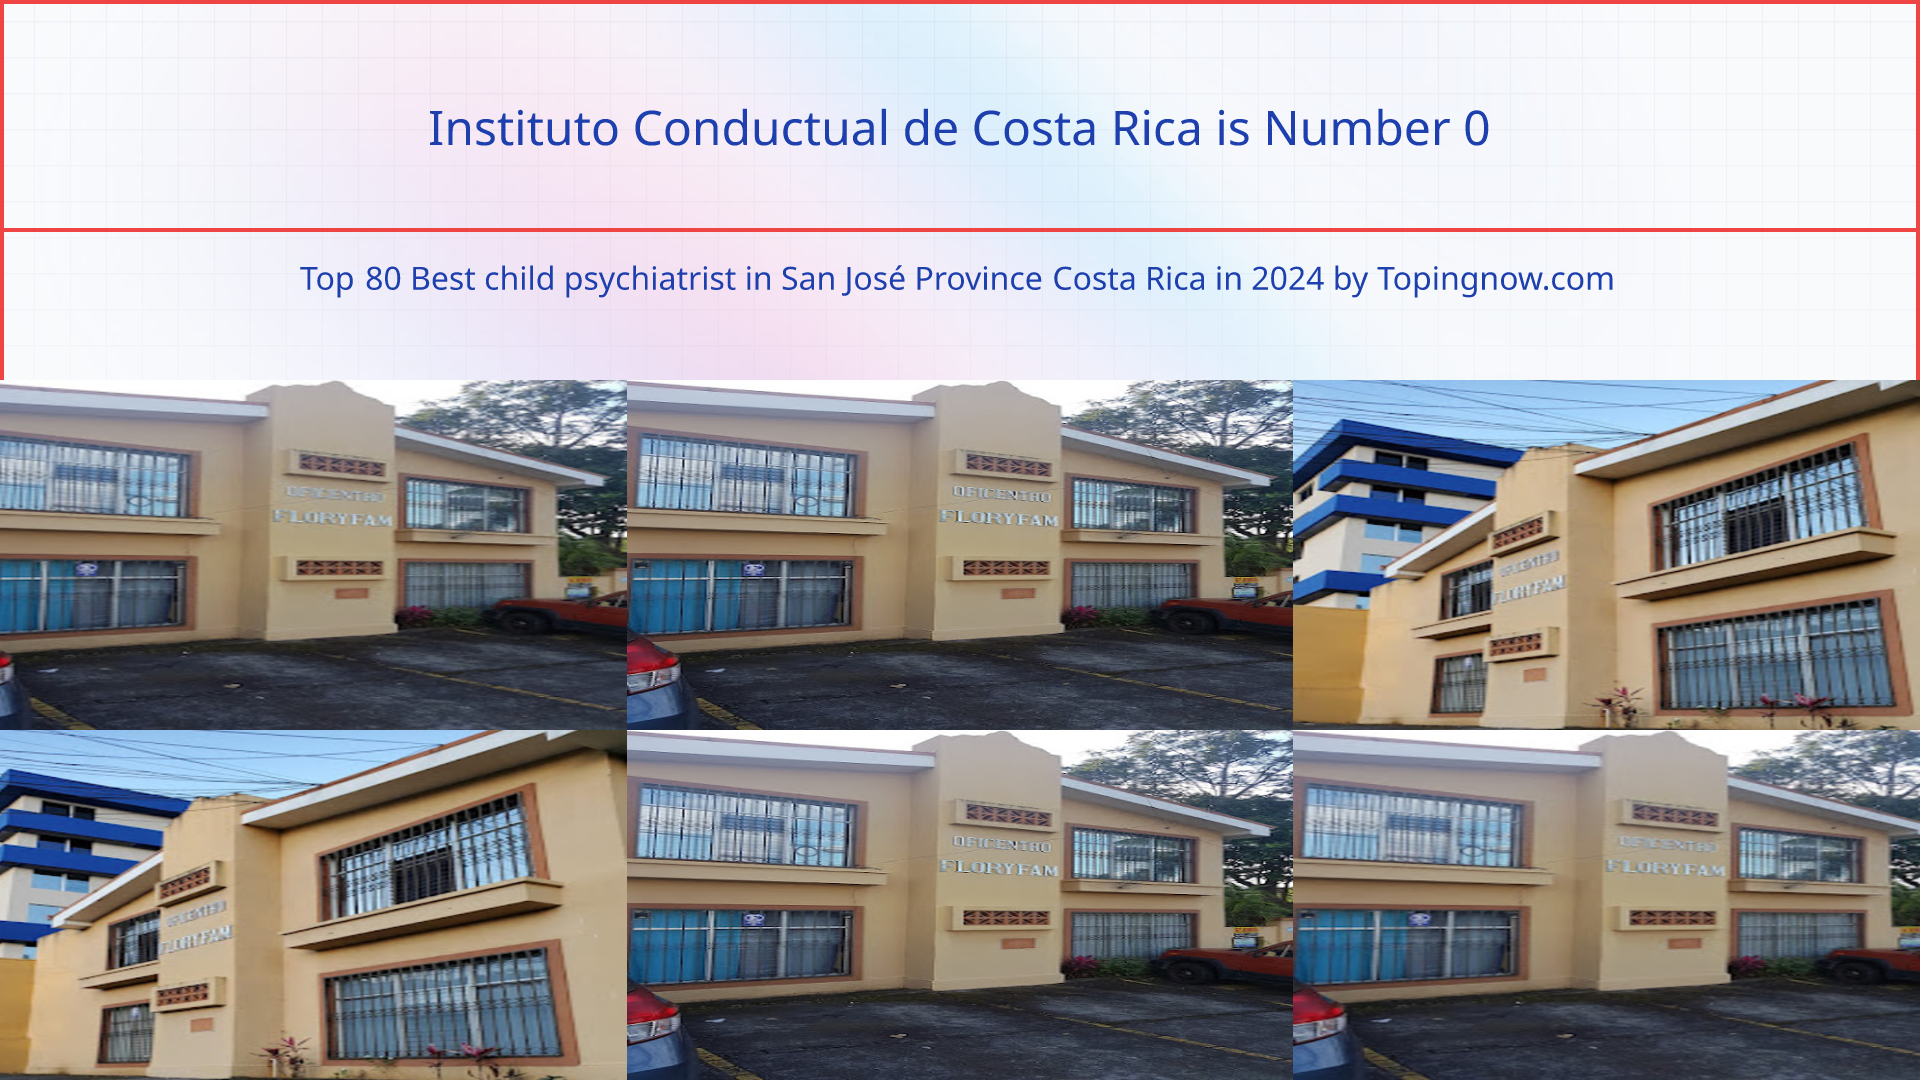 Instituto Conductual de Costa Rica: Top 80 Best child psychiatrist in San José Province Costa Rica in 2024